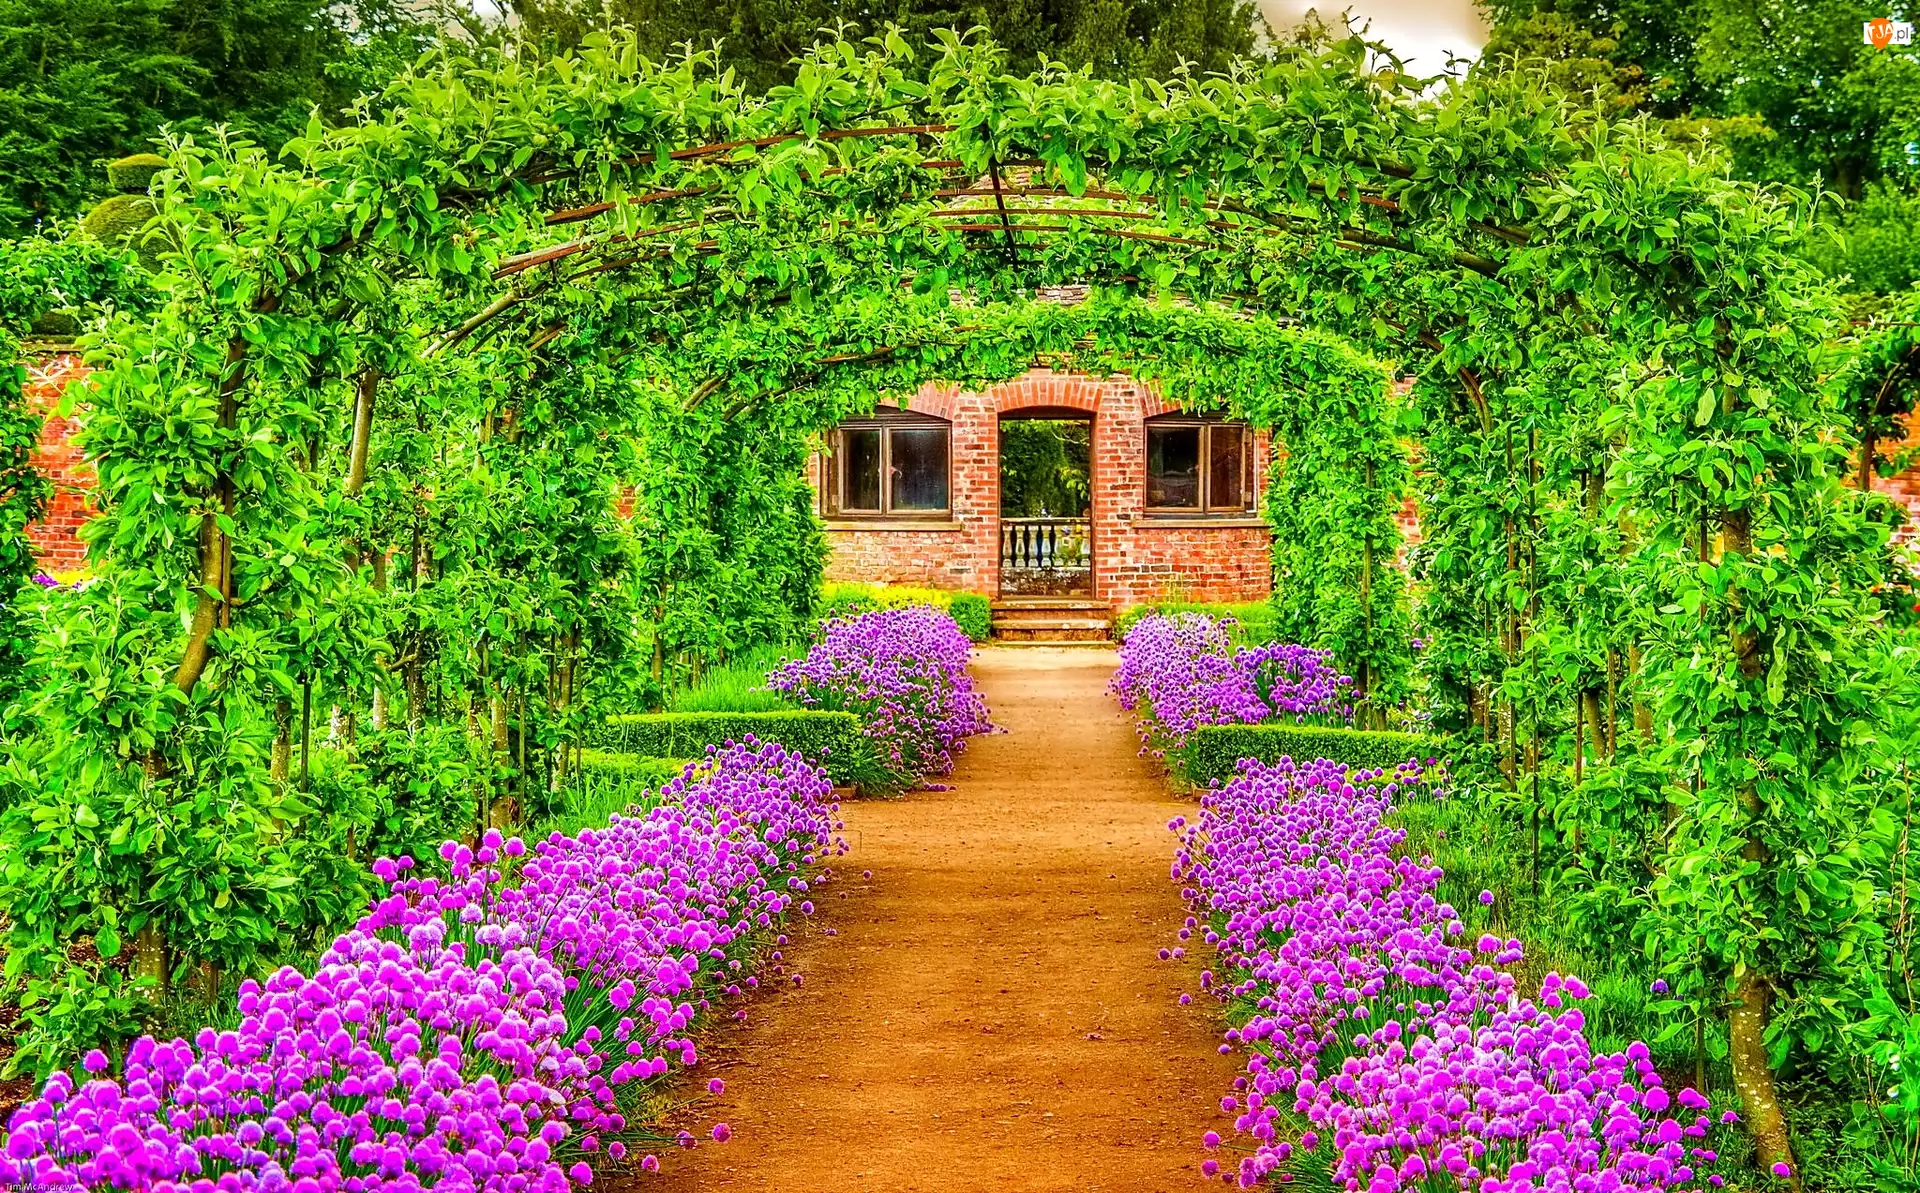 Ogród, Tunel, Kwiaty, Zielony